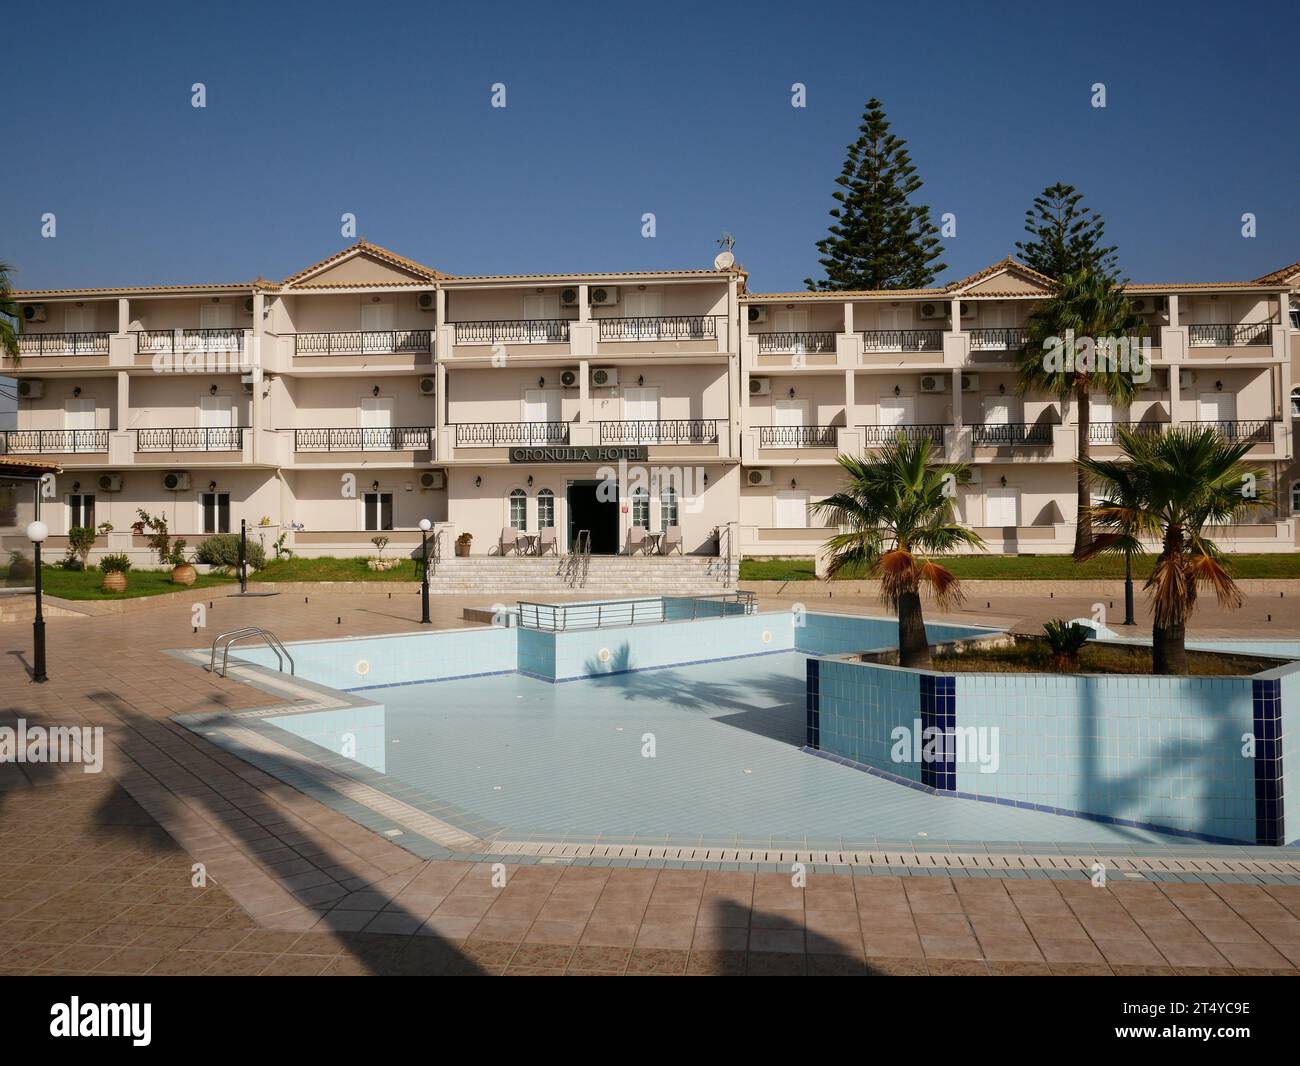 La piscina dell'hotel è stata svuotata alla fine della stagione estiva. Kalamaki, Zante, Grecia. Foto Stock